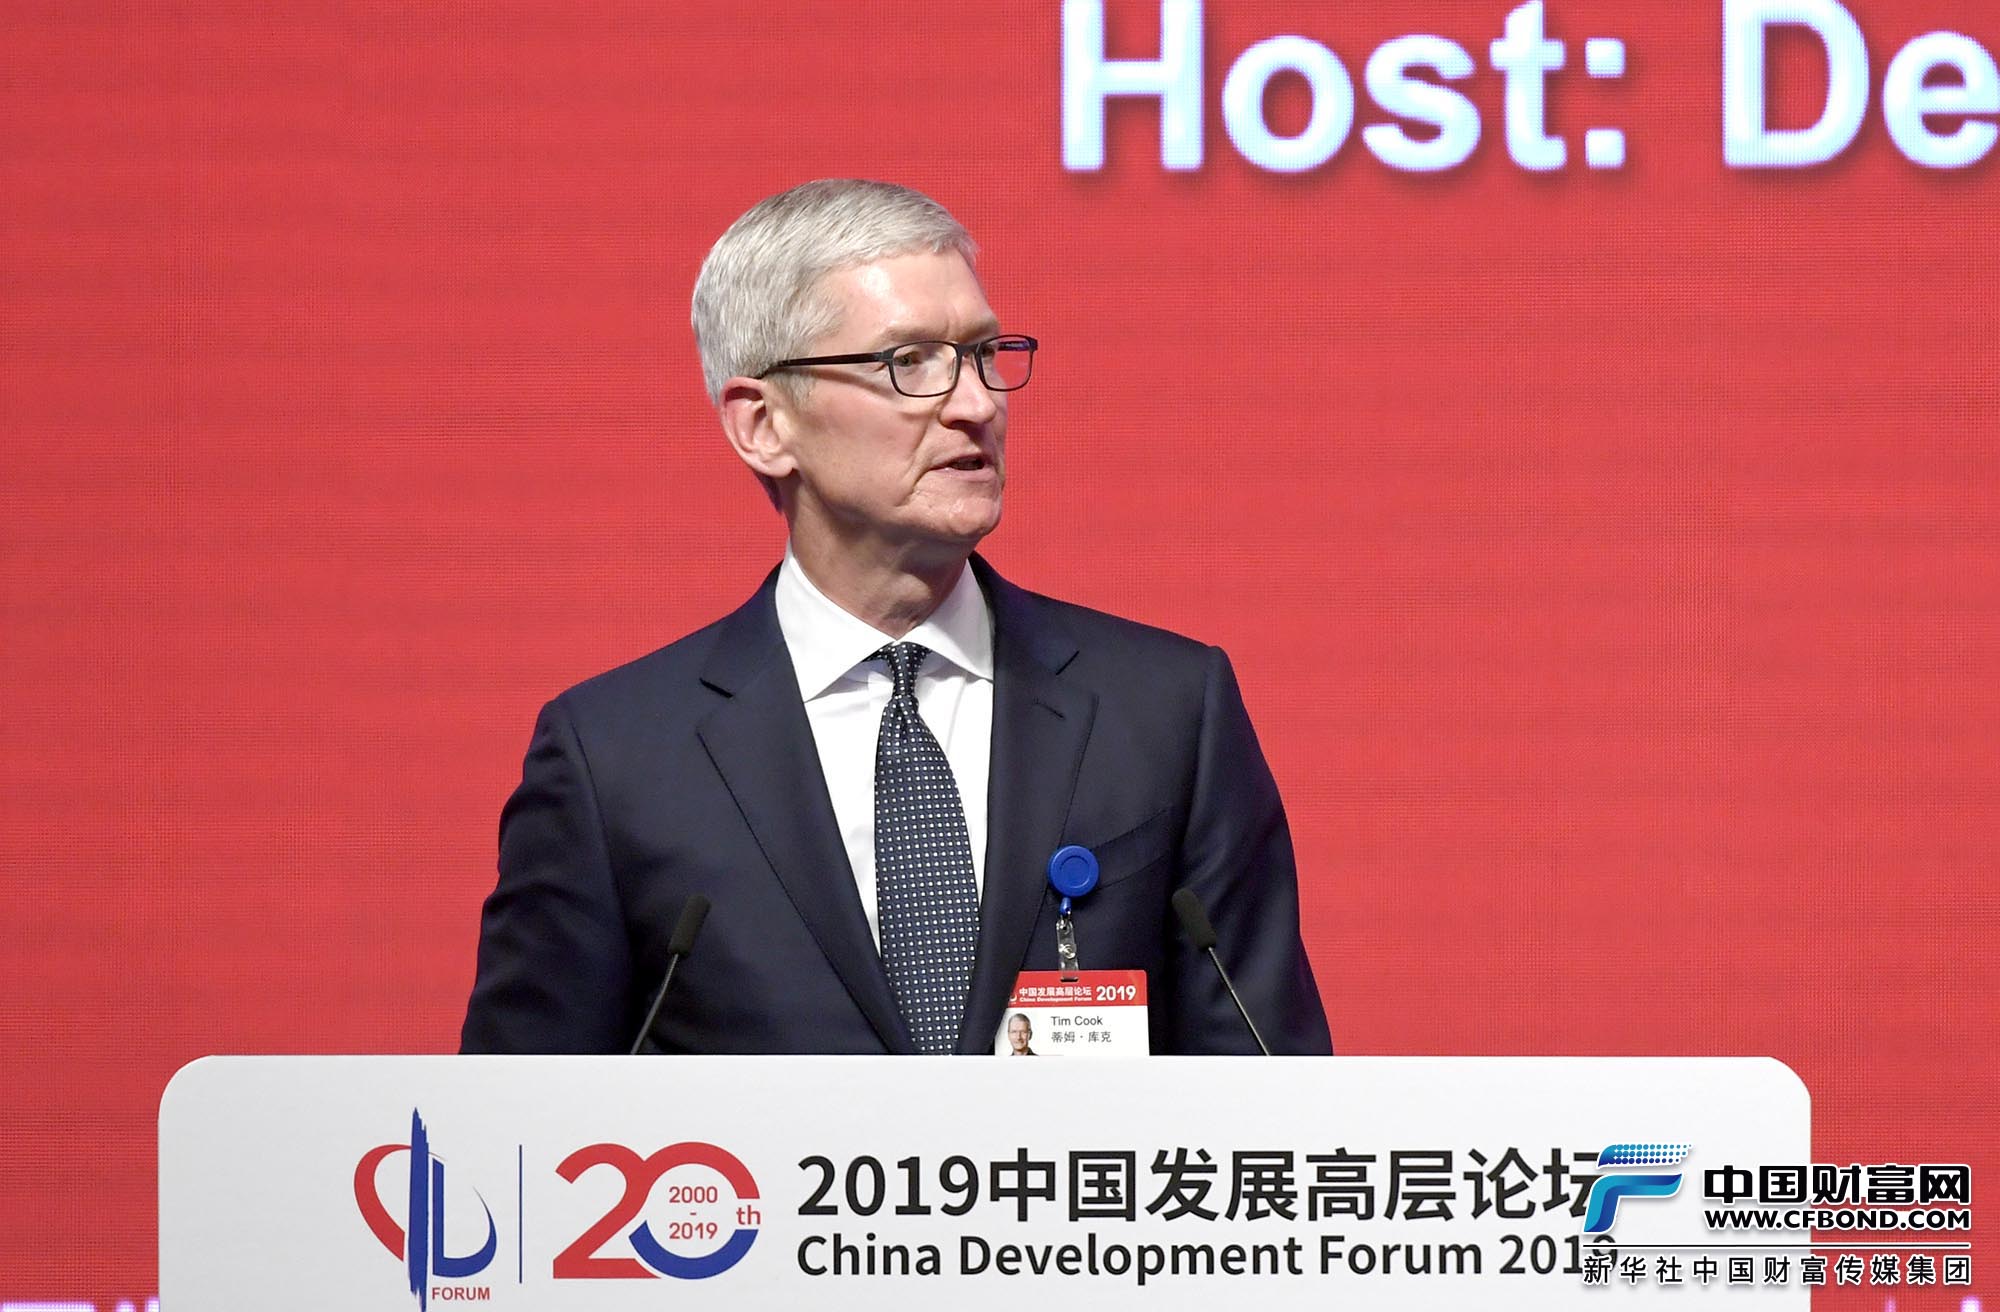 苹果首席执行官蒂姆·库克：苹果欢迎中国持续对外开放